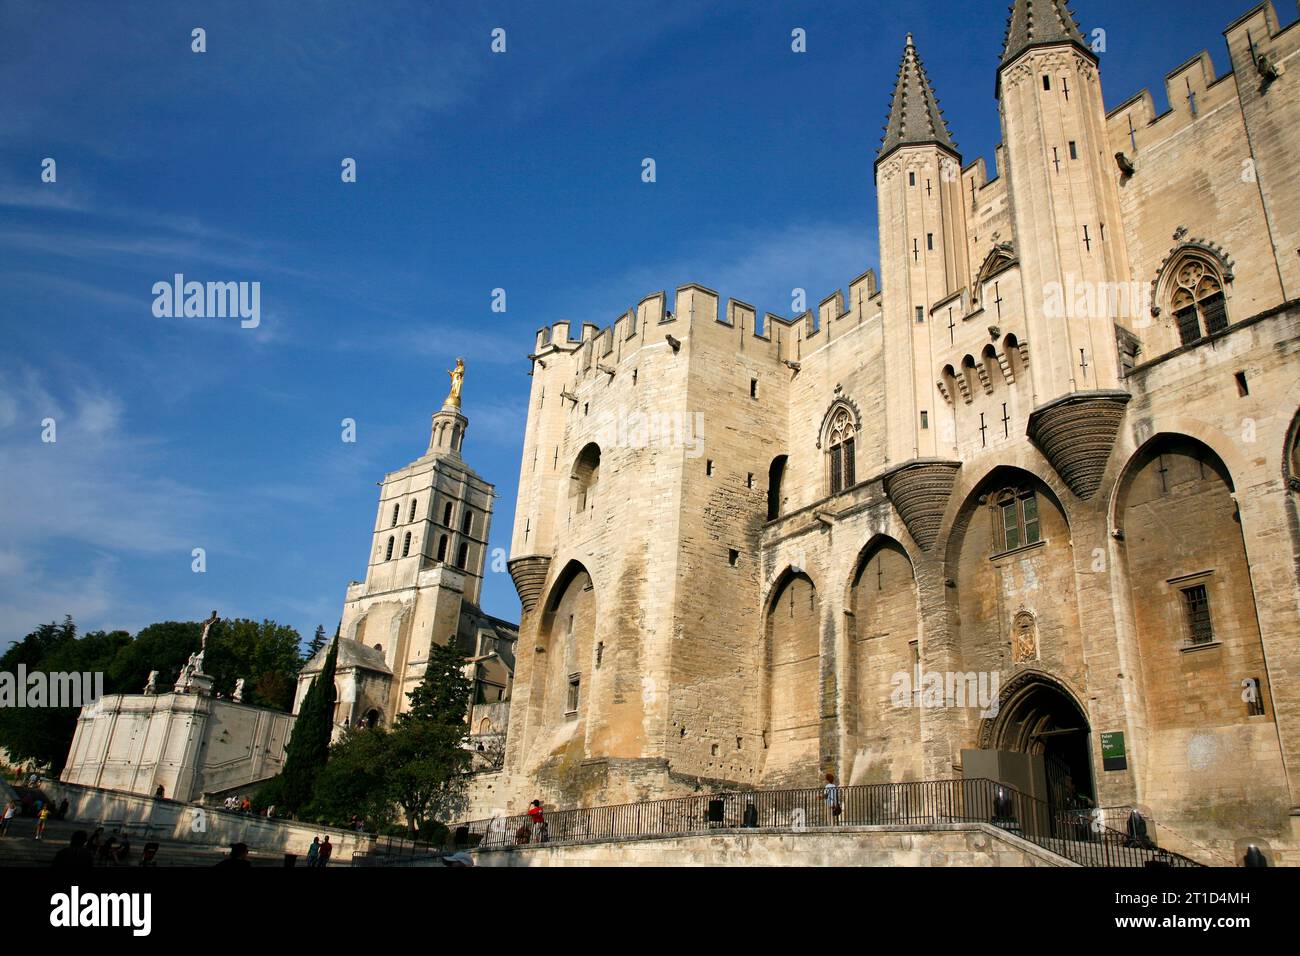 Palais des Papes, Avignon, Vaucluse, Provence, France. Stock Photo